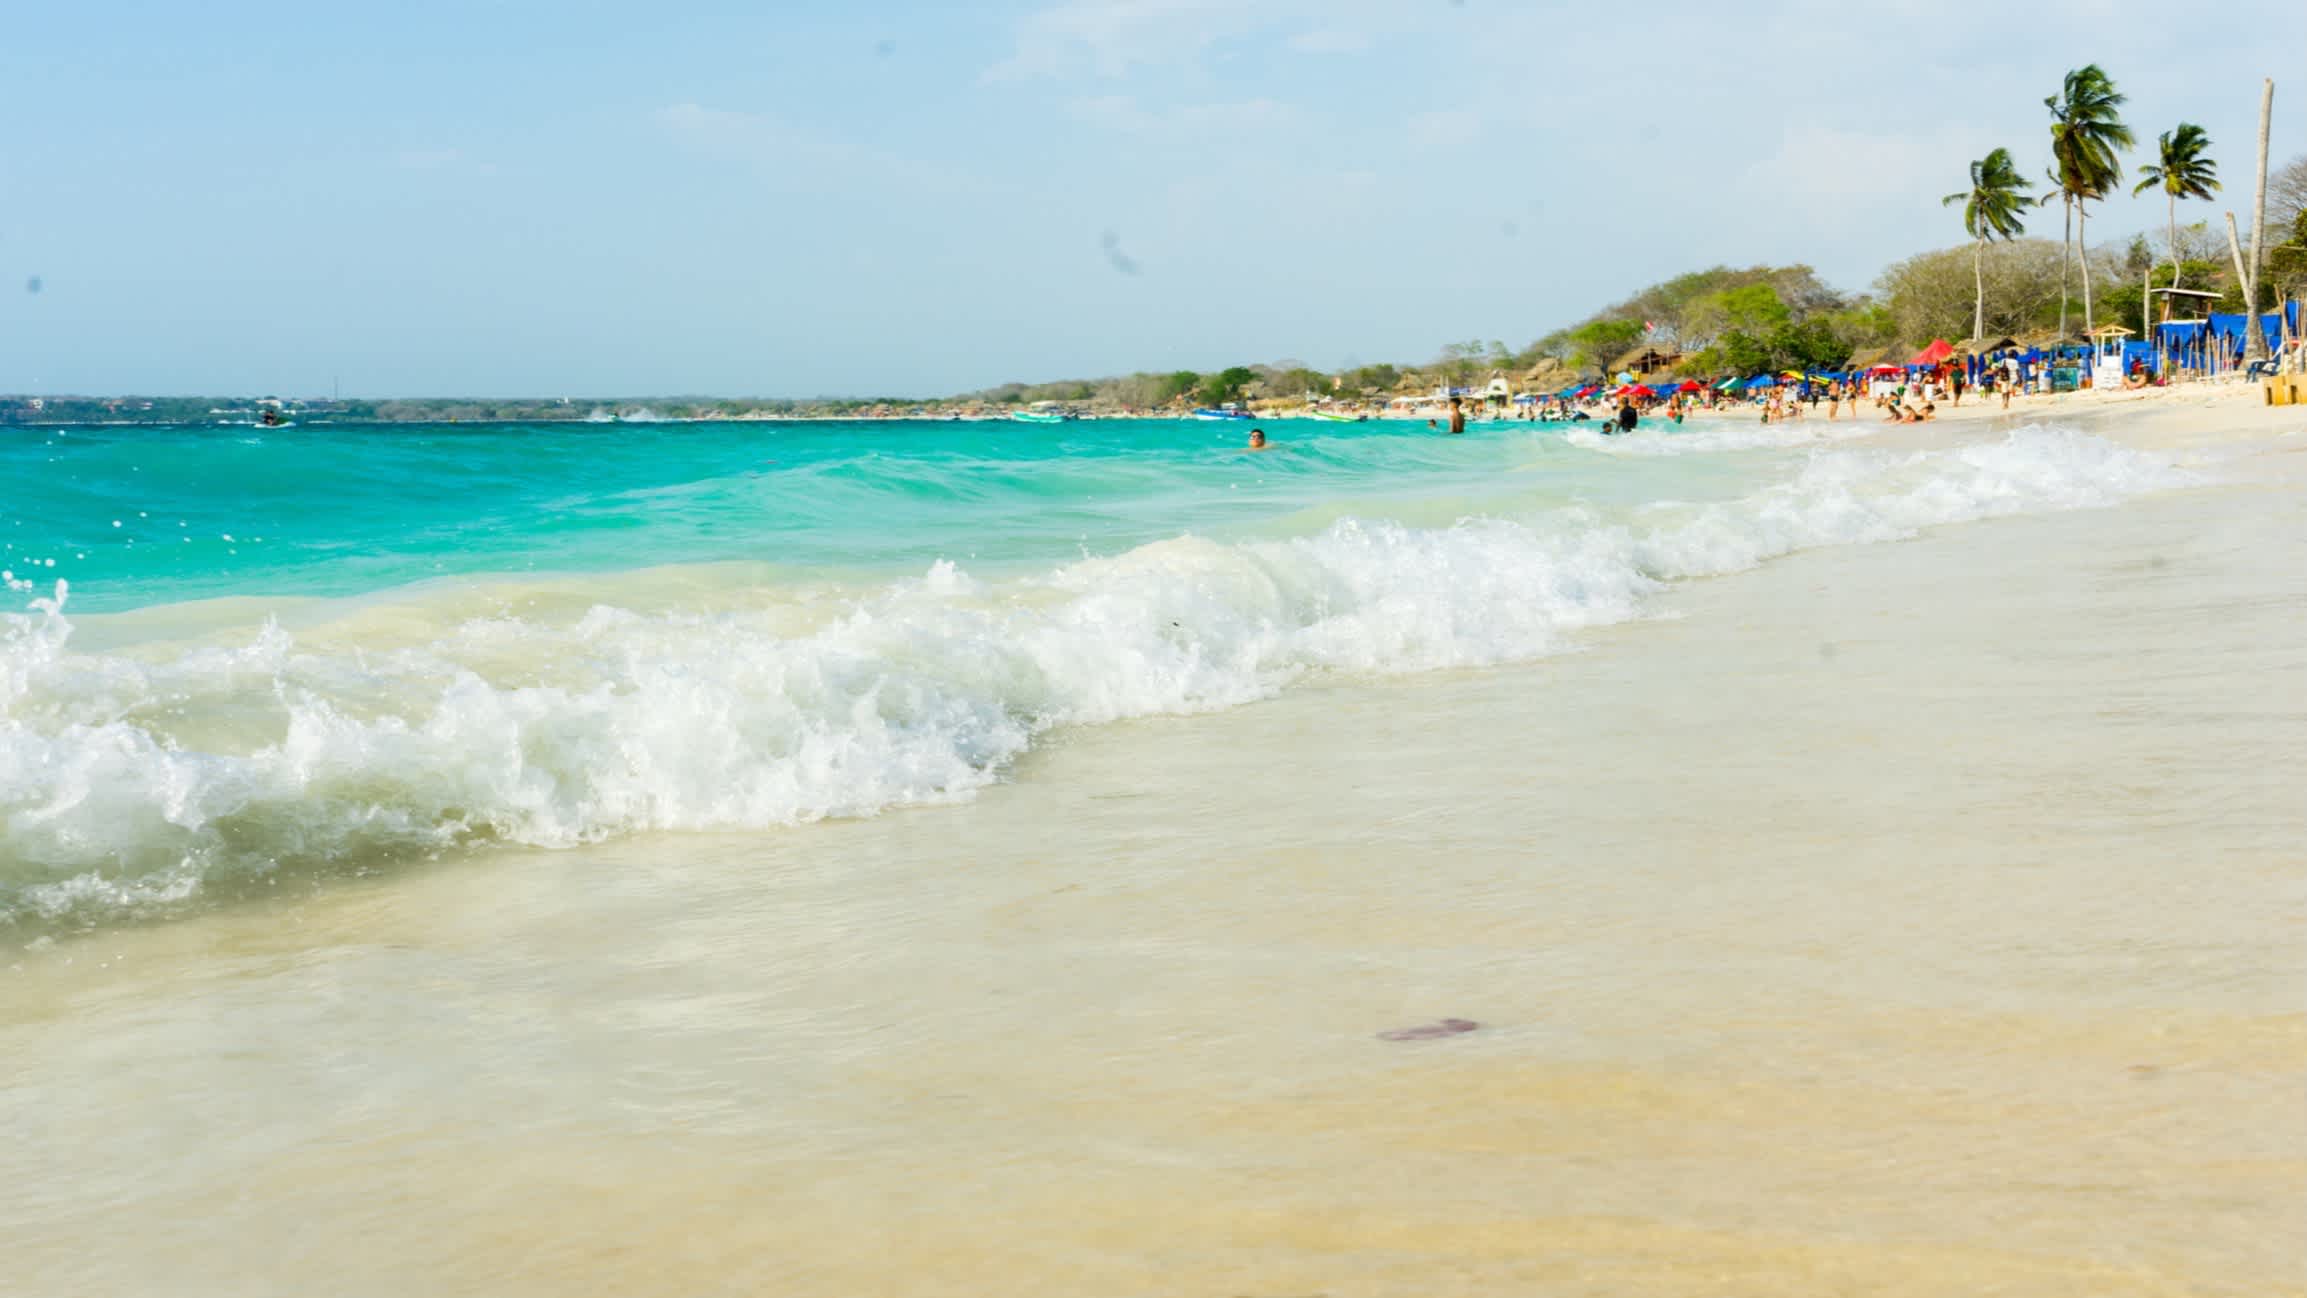 Personnes se baignant sur la plage de sable blanc de l'Isla de Baru en Colombie